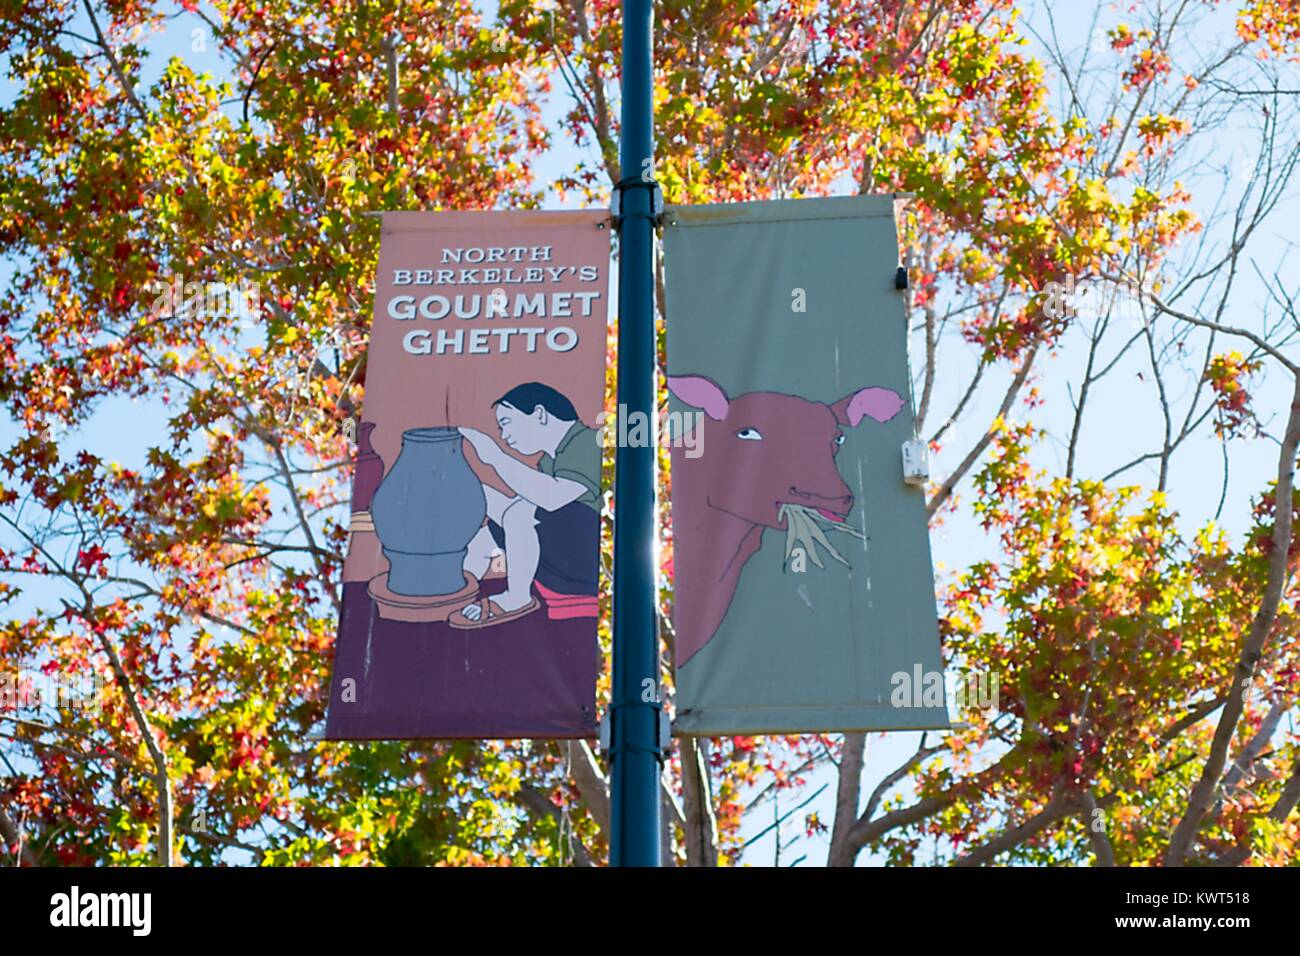 Lettura del segno 'Nord Berkeley del Ghetto Gourmet' e dotate di immagini di una vacca e un potter, nel ghetto Gourmet (Nord Shattuck) quartiere di Berkeley, Ottobre 6, 2017. () Foto Stock